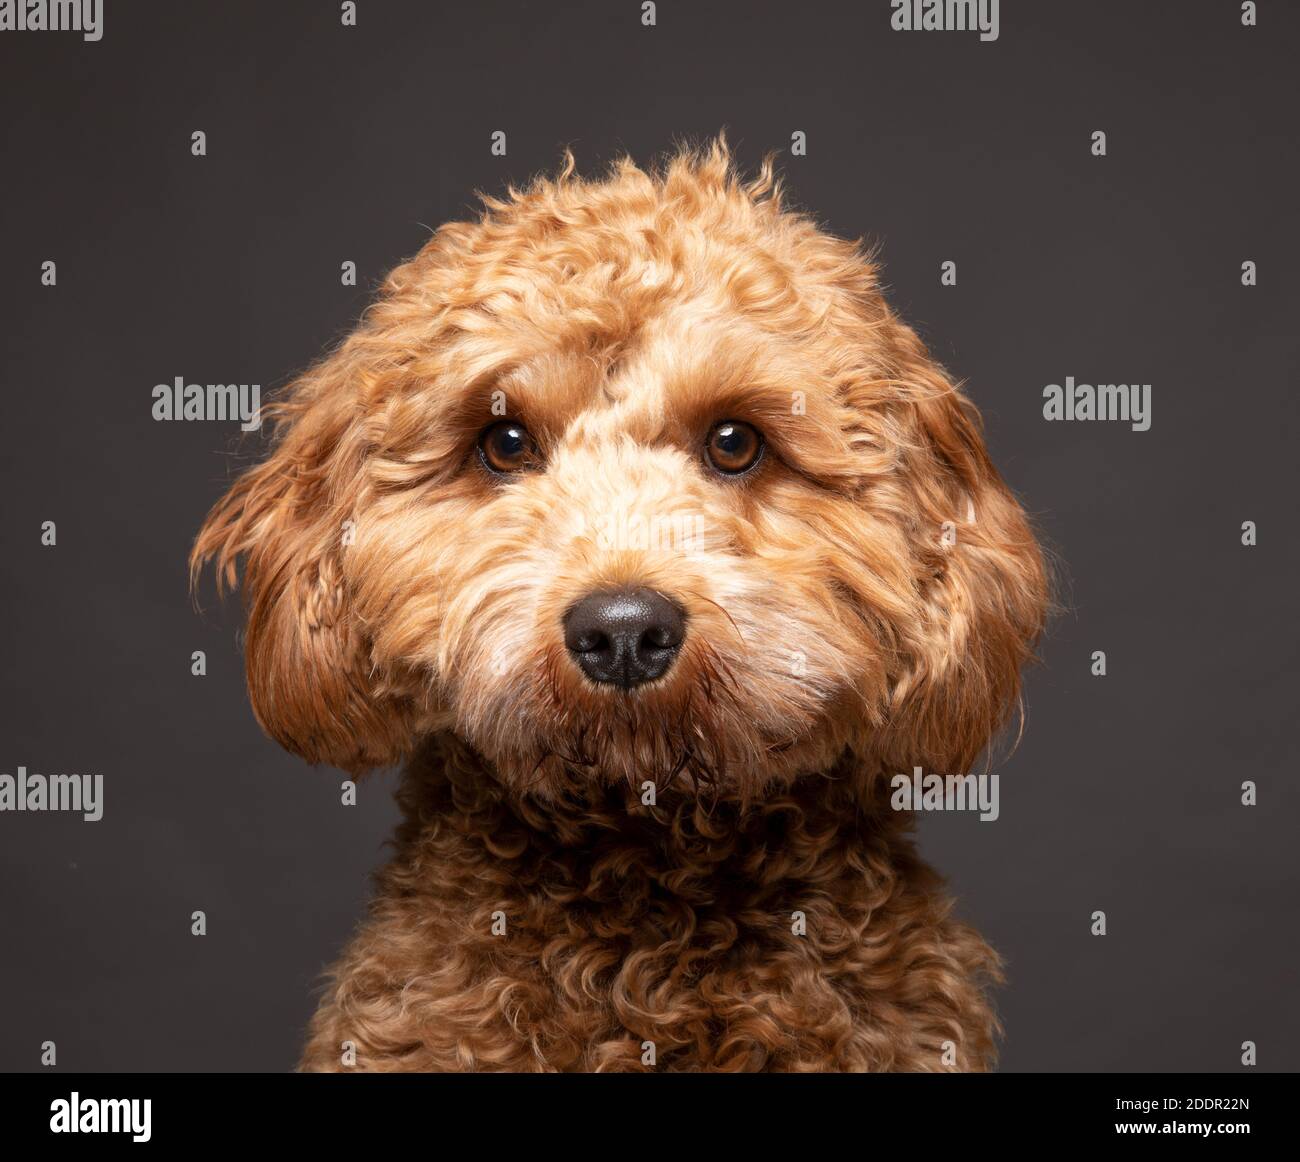 Cavapoo Hund schaut direkt zur Kamera vor einem schlichten grauen Hintergrund. Stockfoto